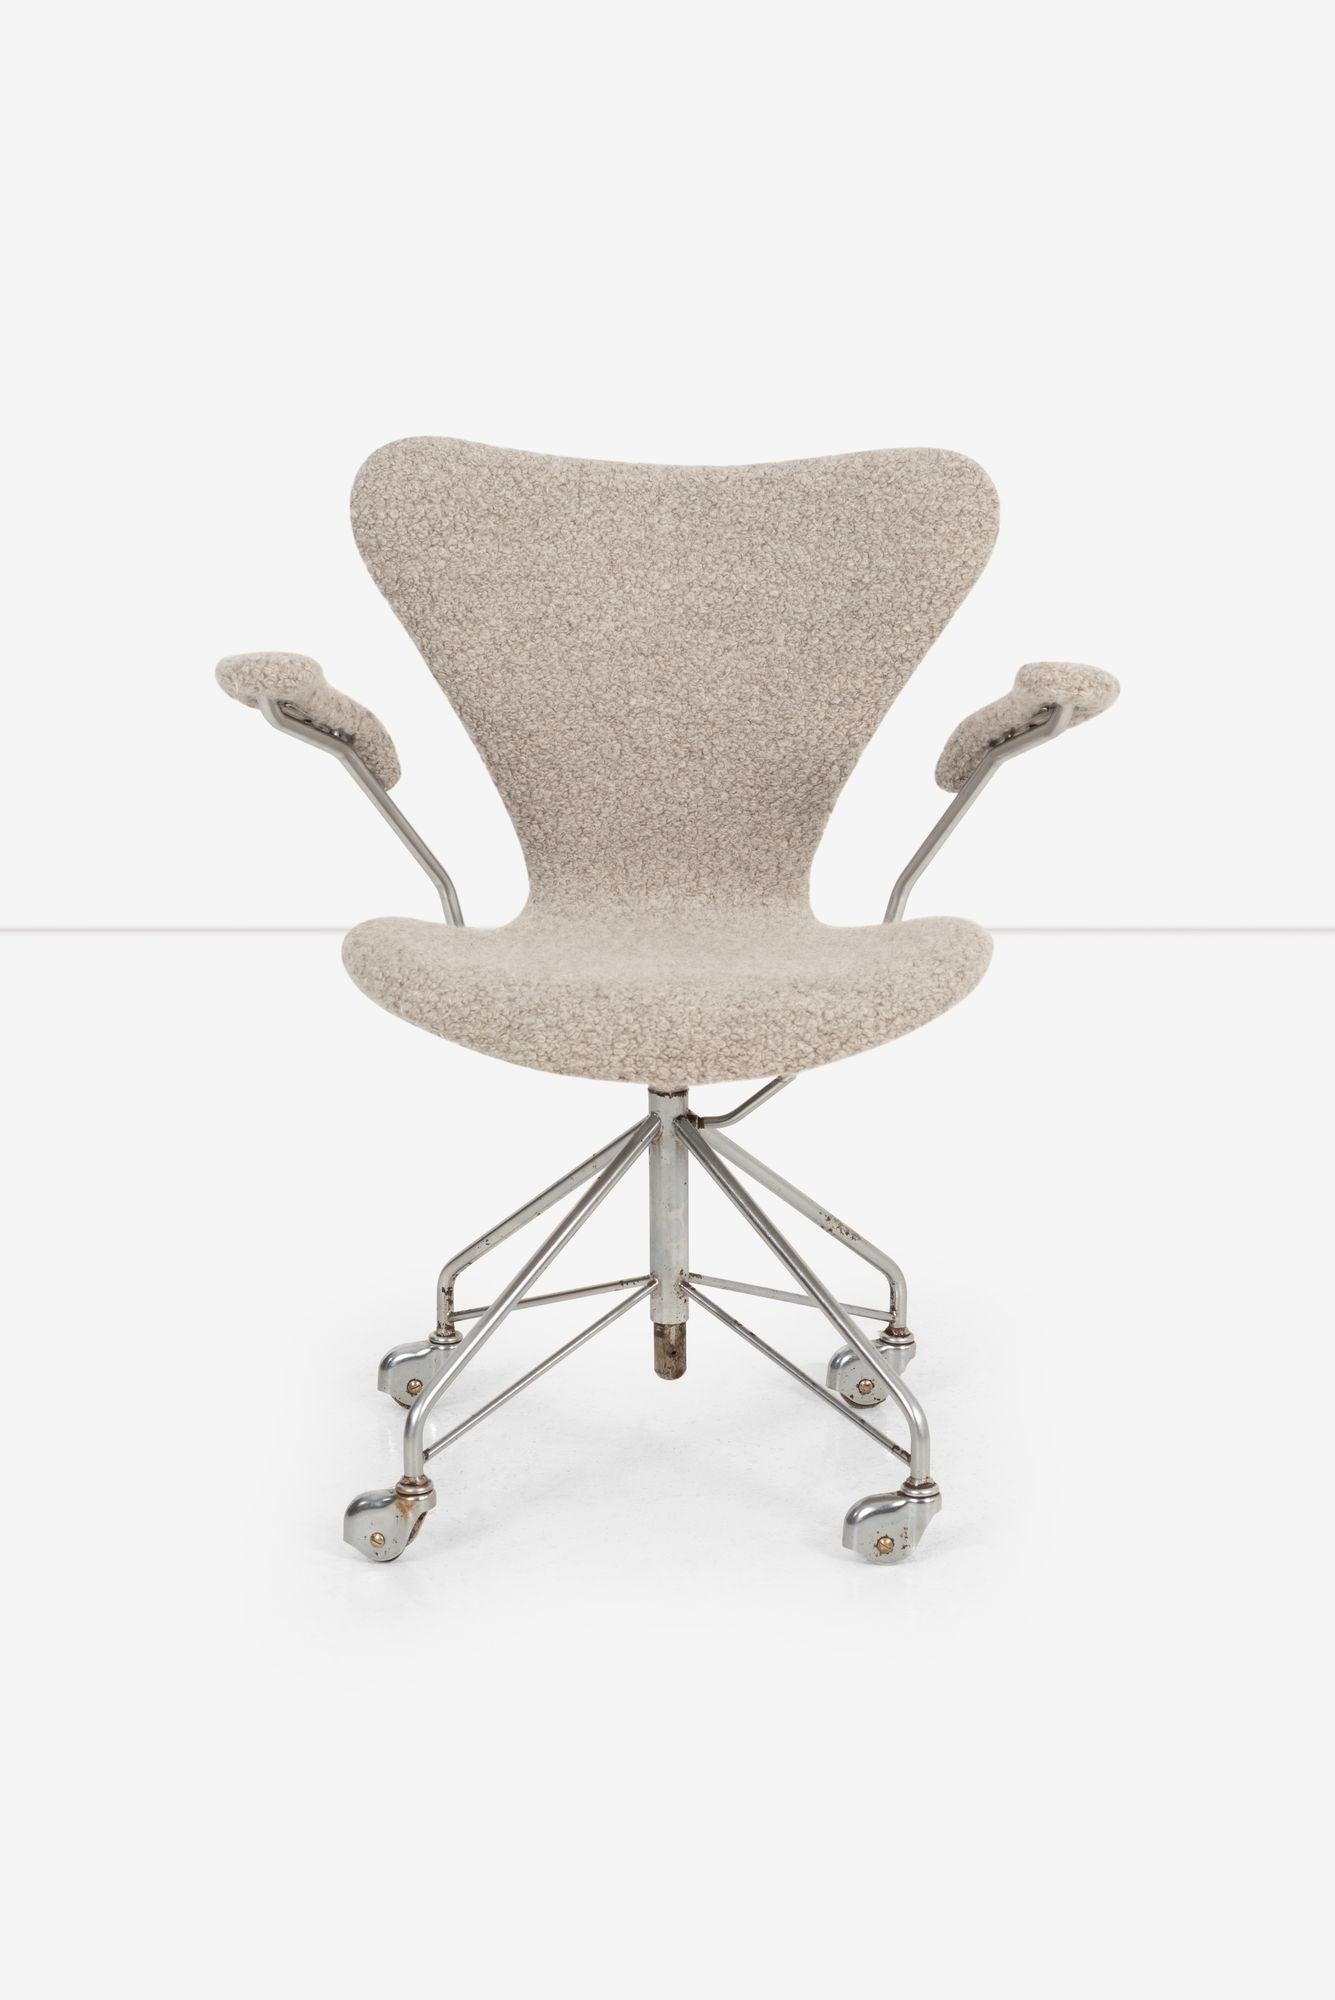 Chaise de bureau Arne Jacobsen Sevener, modèle 3117
Siège pivotant et réglable en hauteur
Rembourré avec le tissu Great Plains 